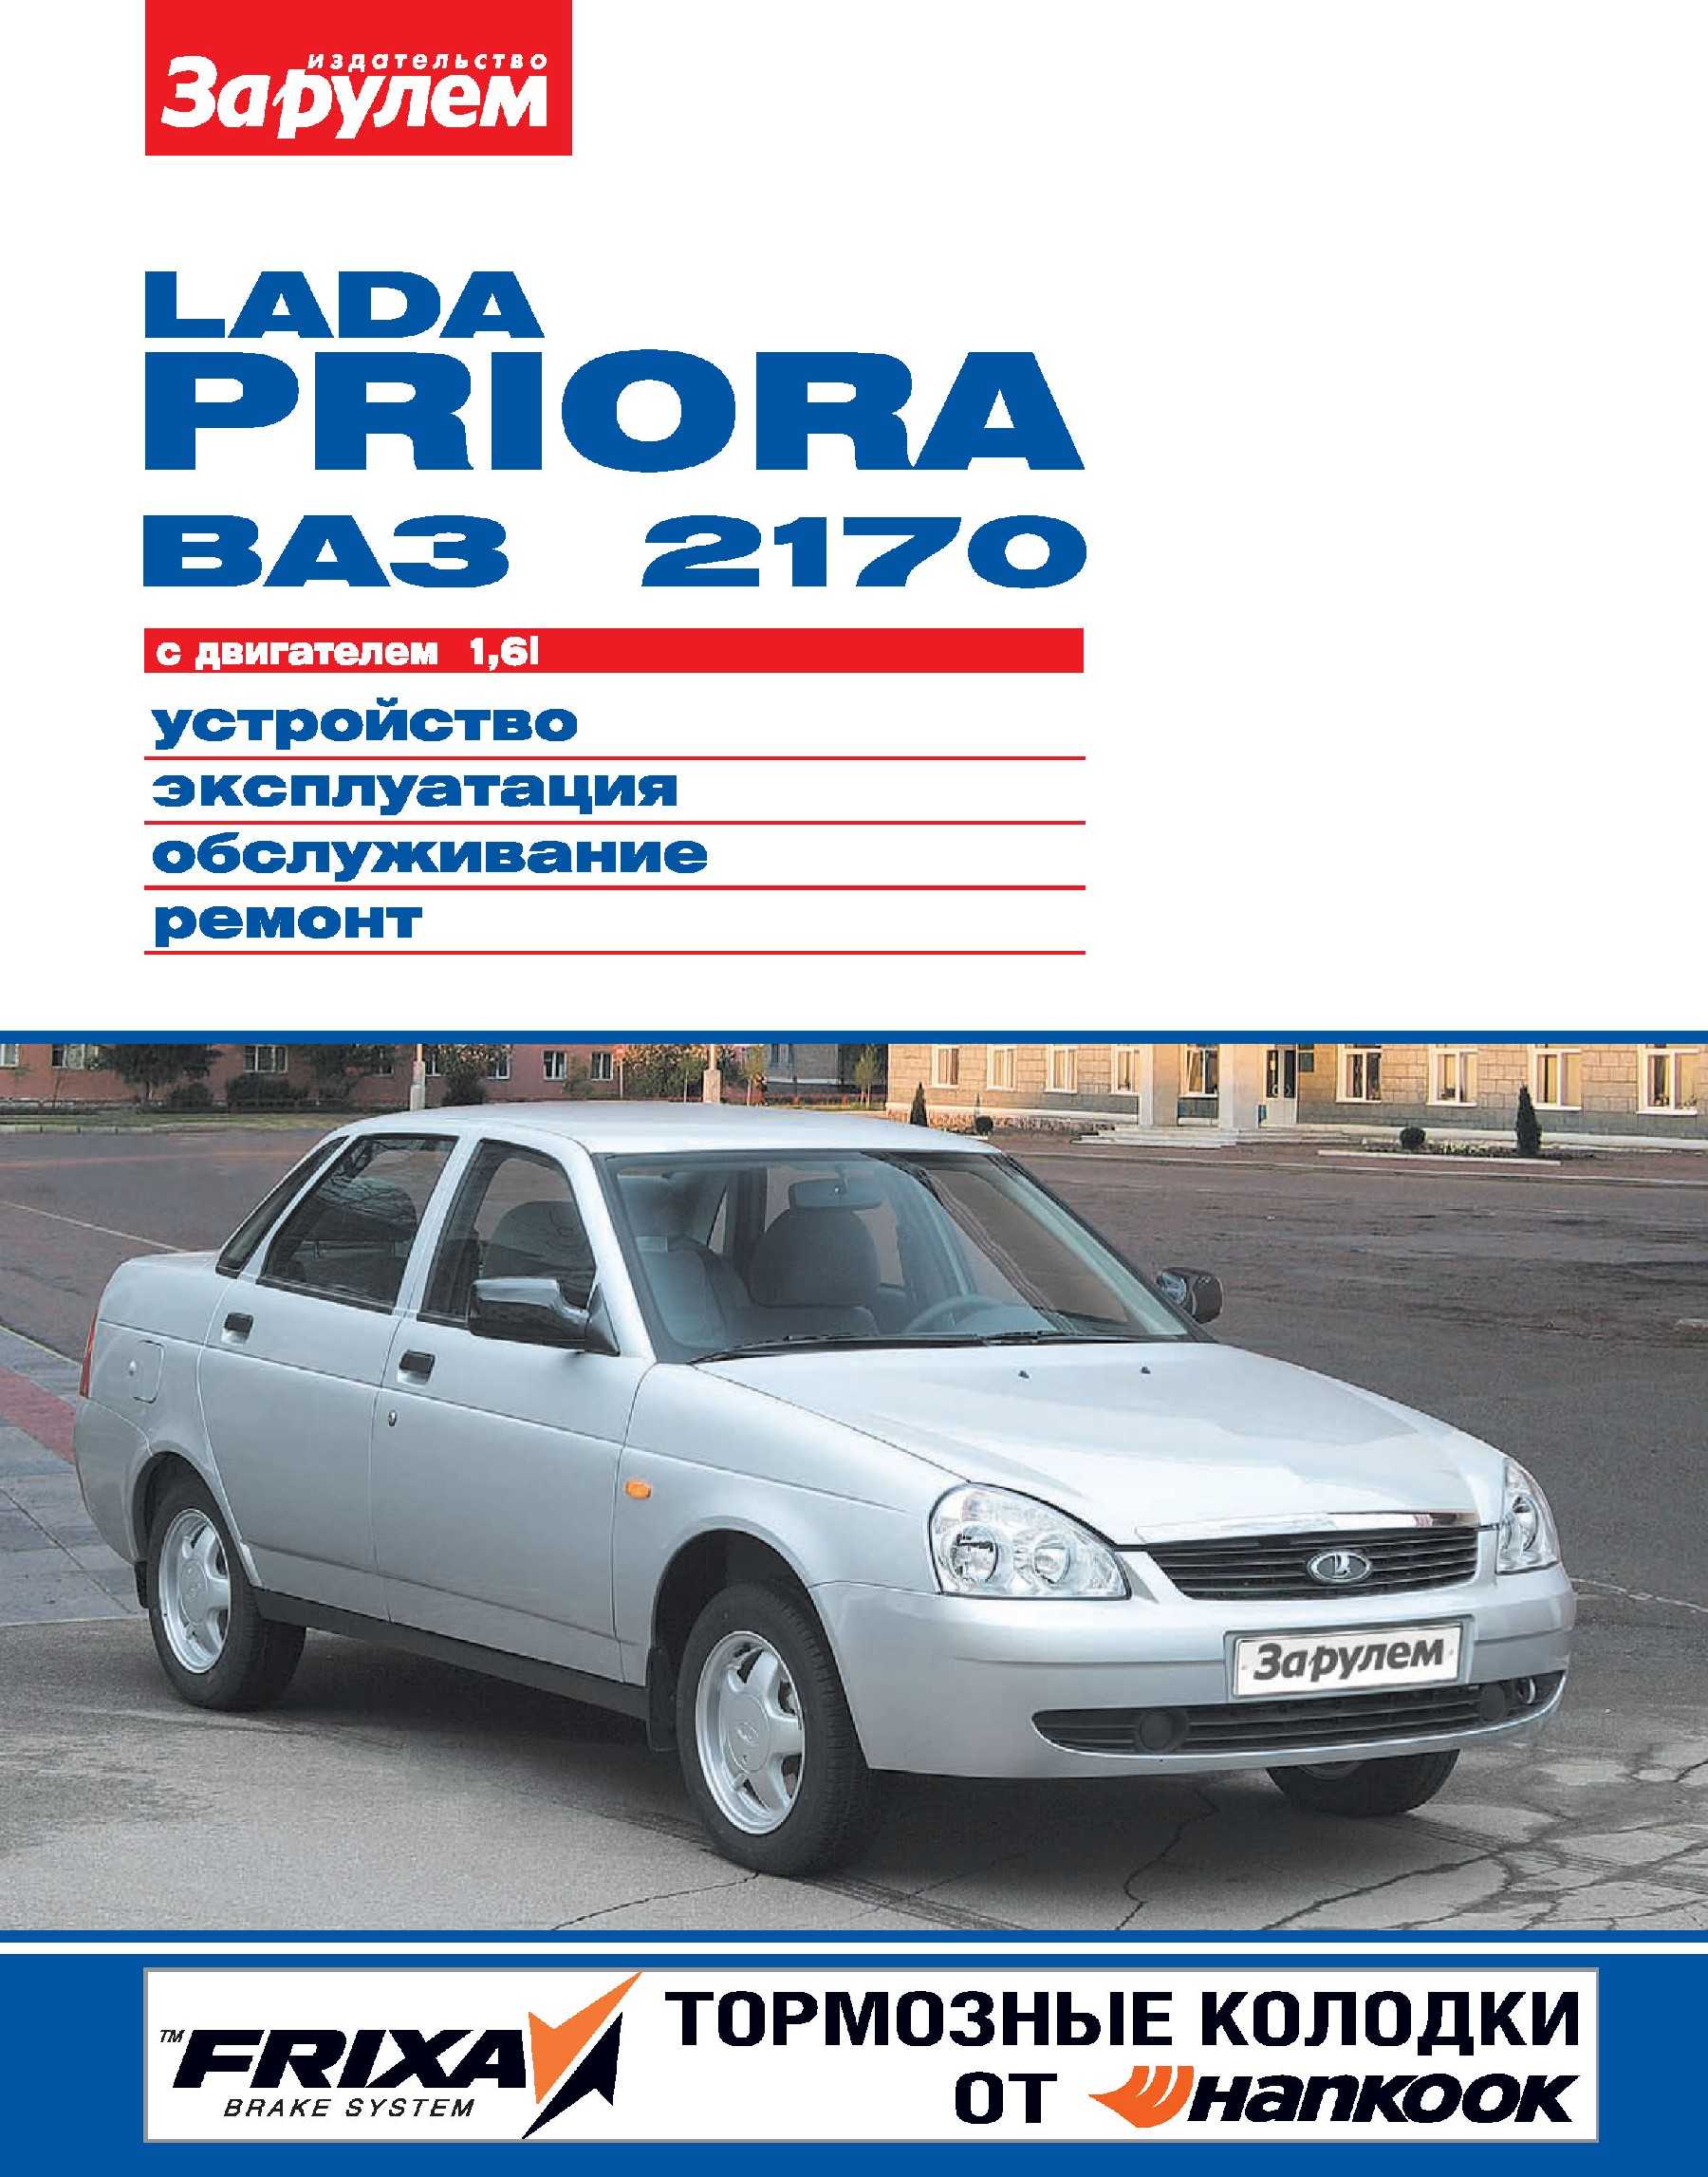 Lada priora руководство по эксплуатации, техническому обслуживанию и ремонту